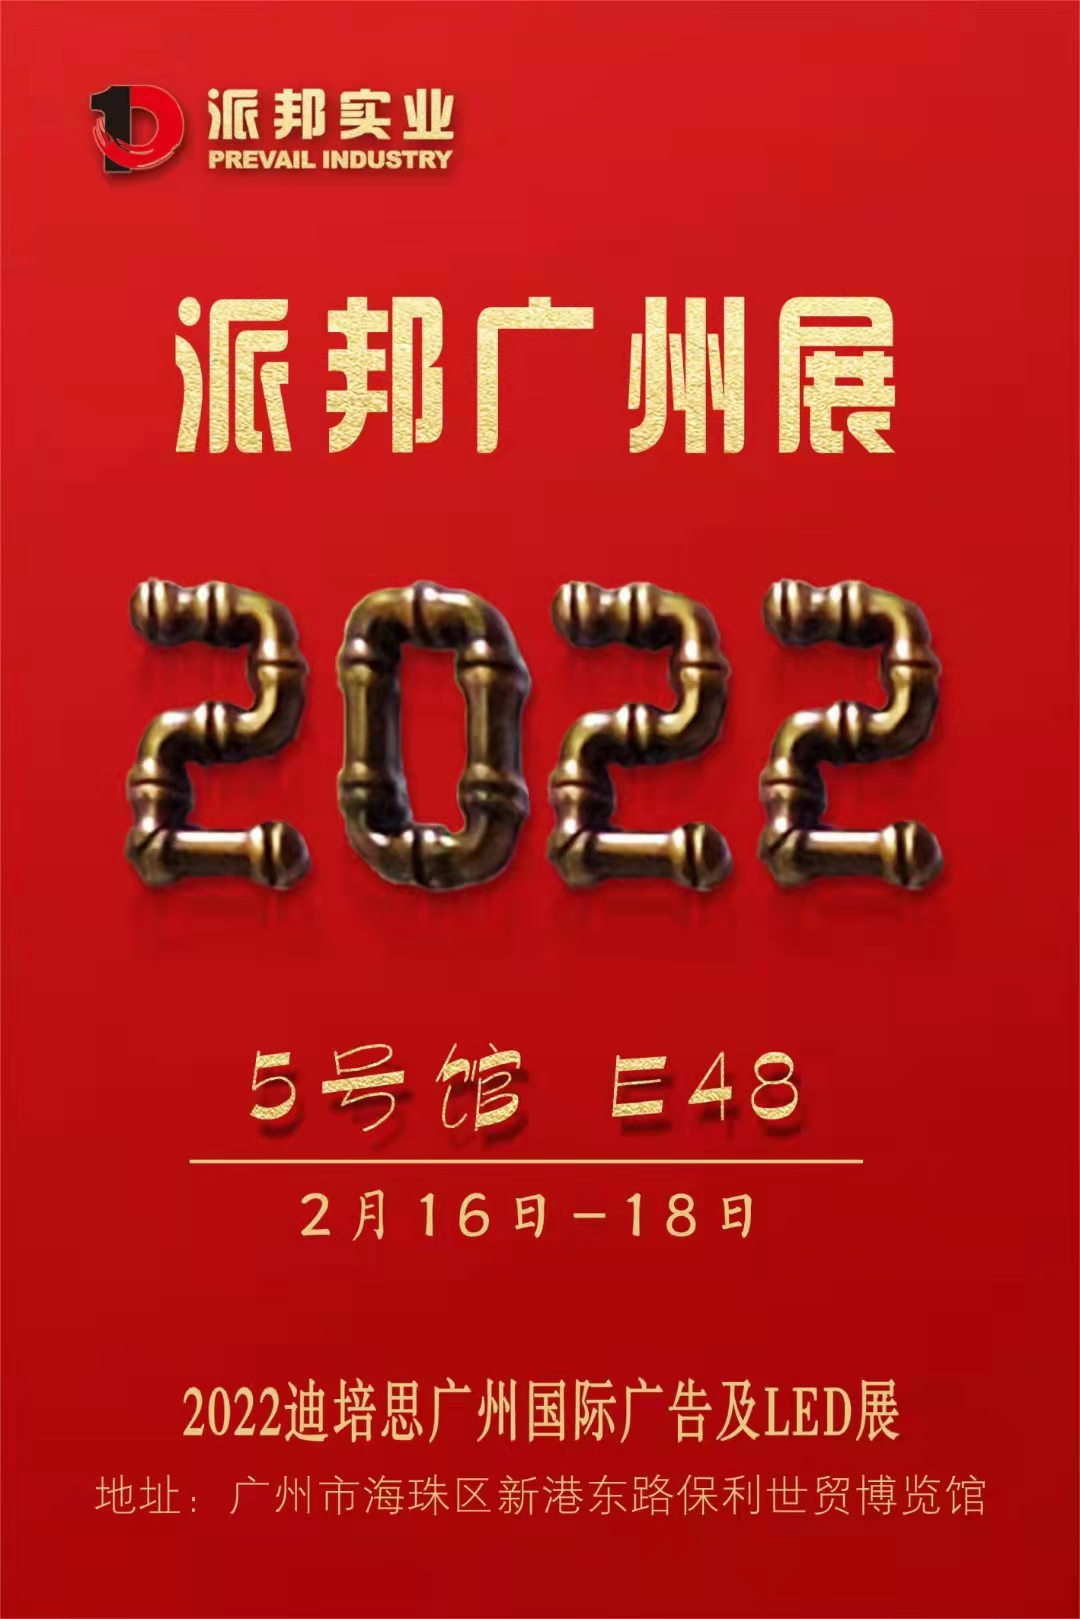 2022年2月16日-2月18日广州展